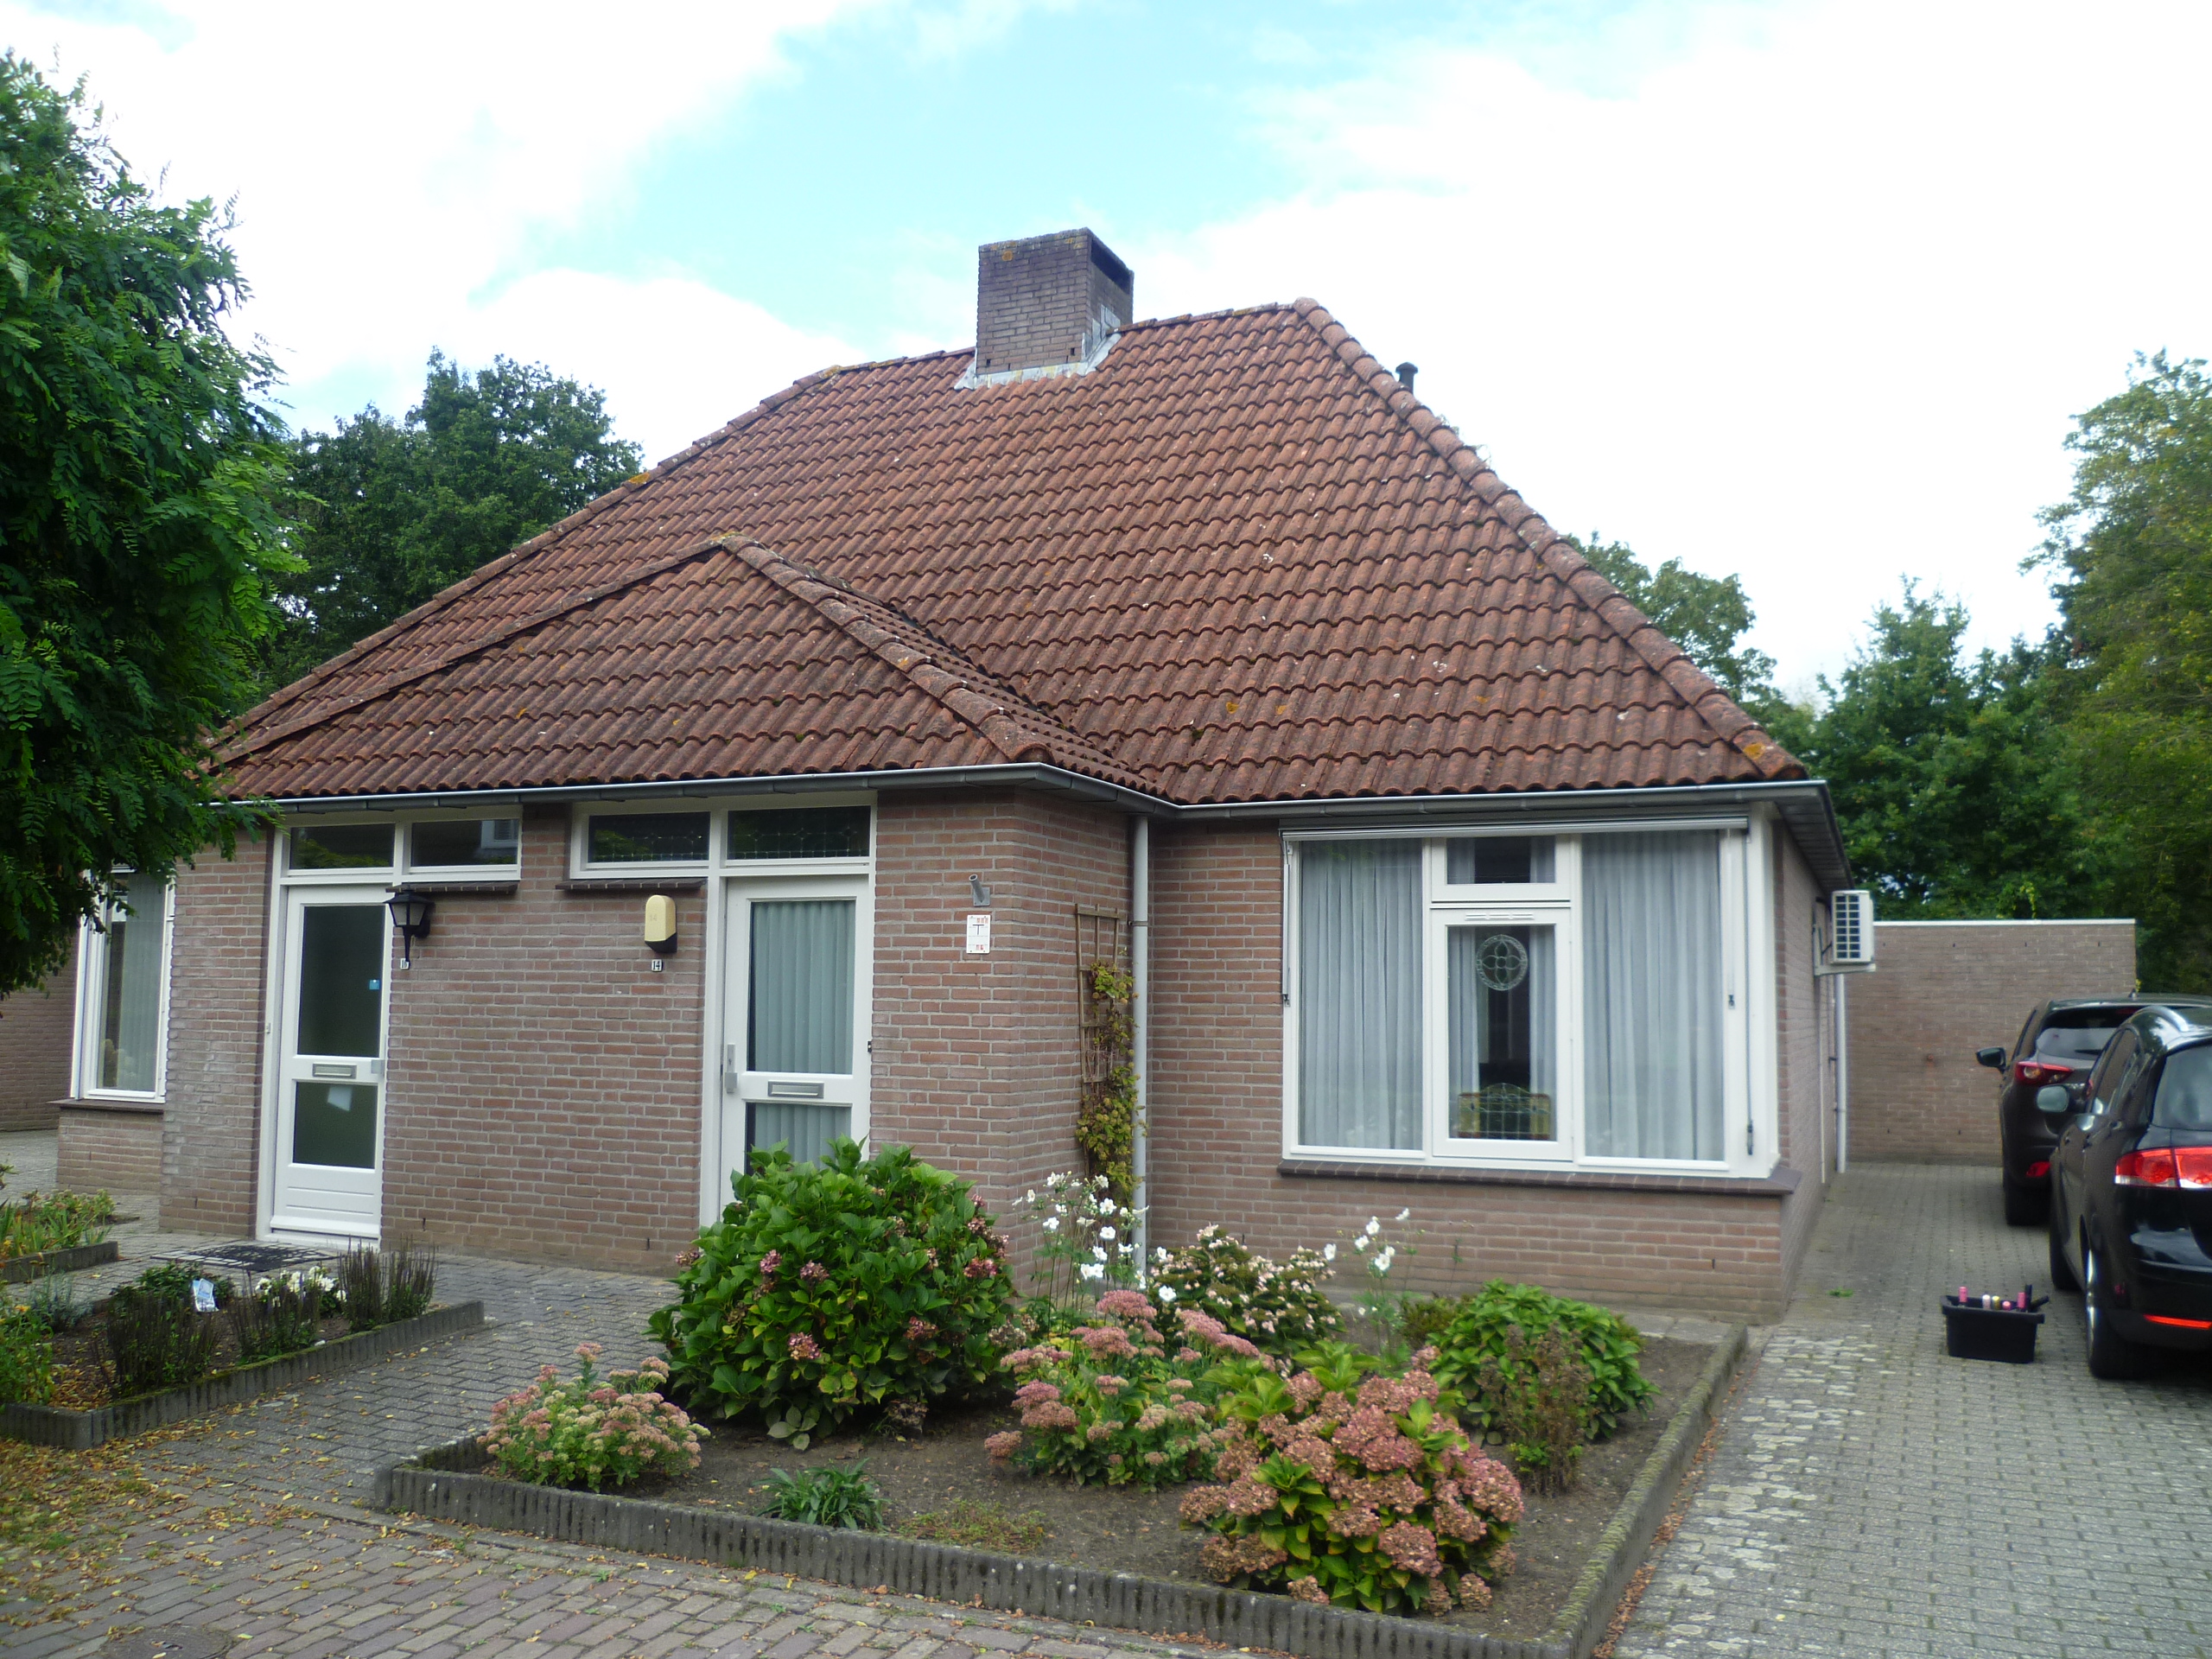 De Berkenheg 14, 5561 CB Riethoven, Nederland